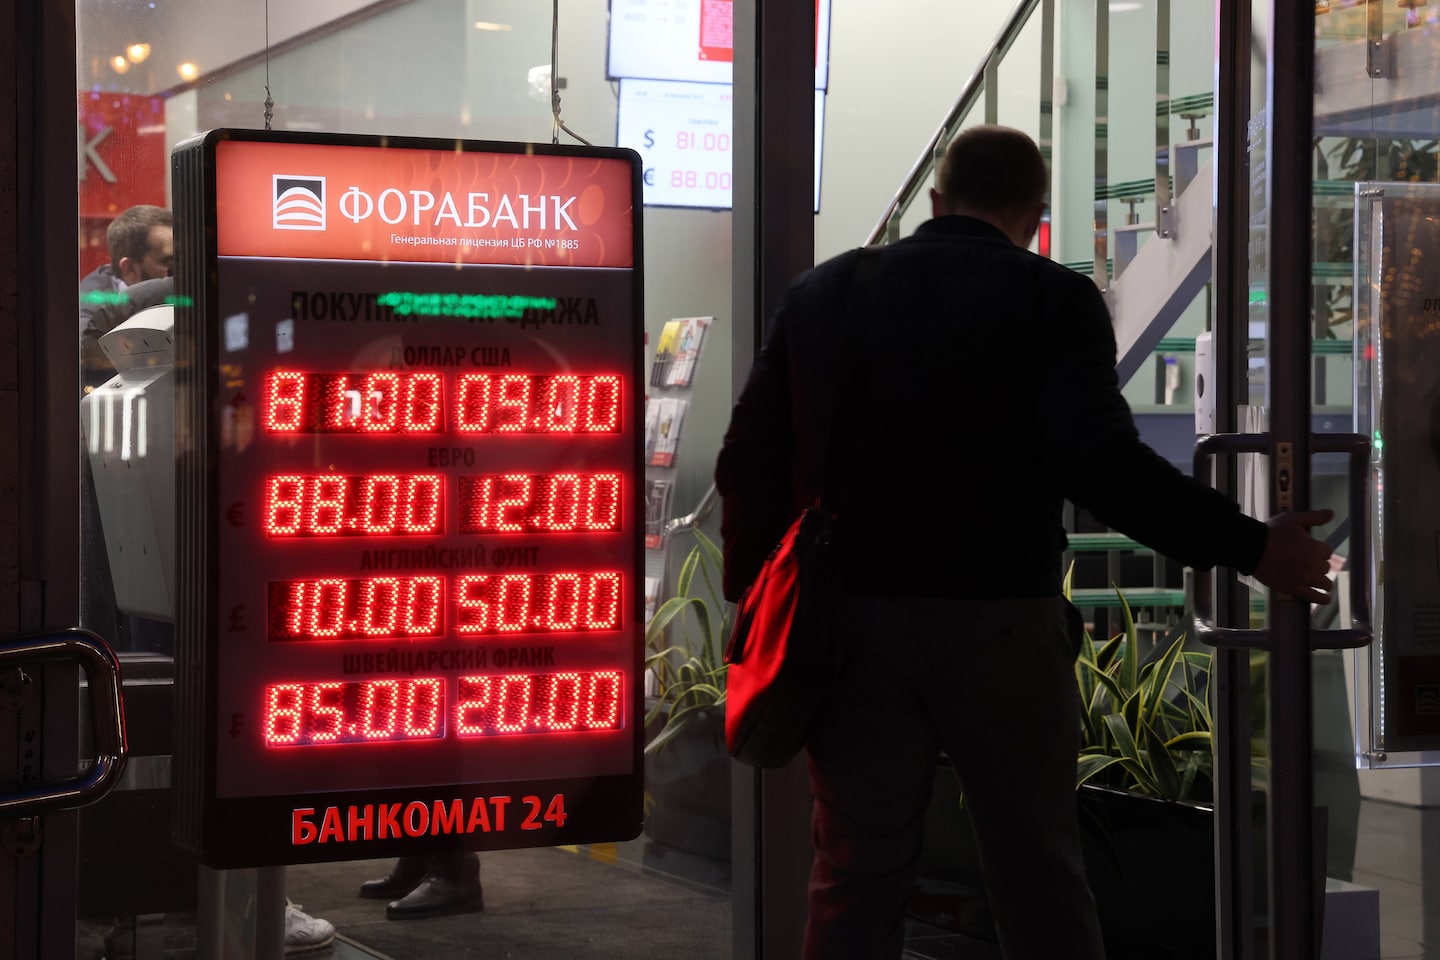 La Banca centrale russa impone controlli sugli acquisti in dollari

